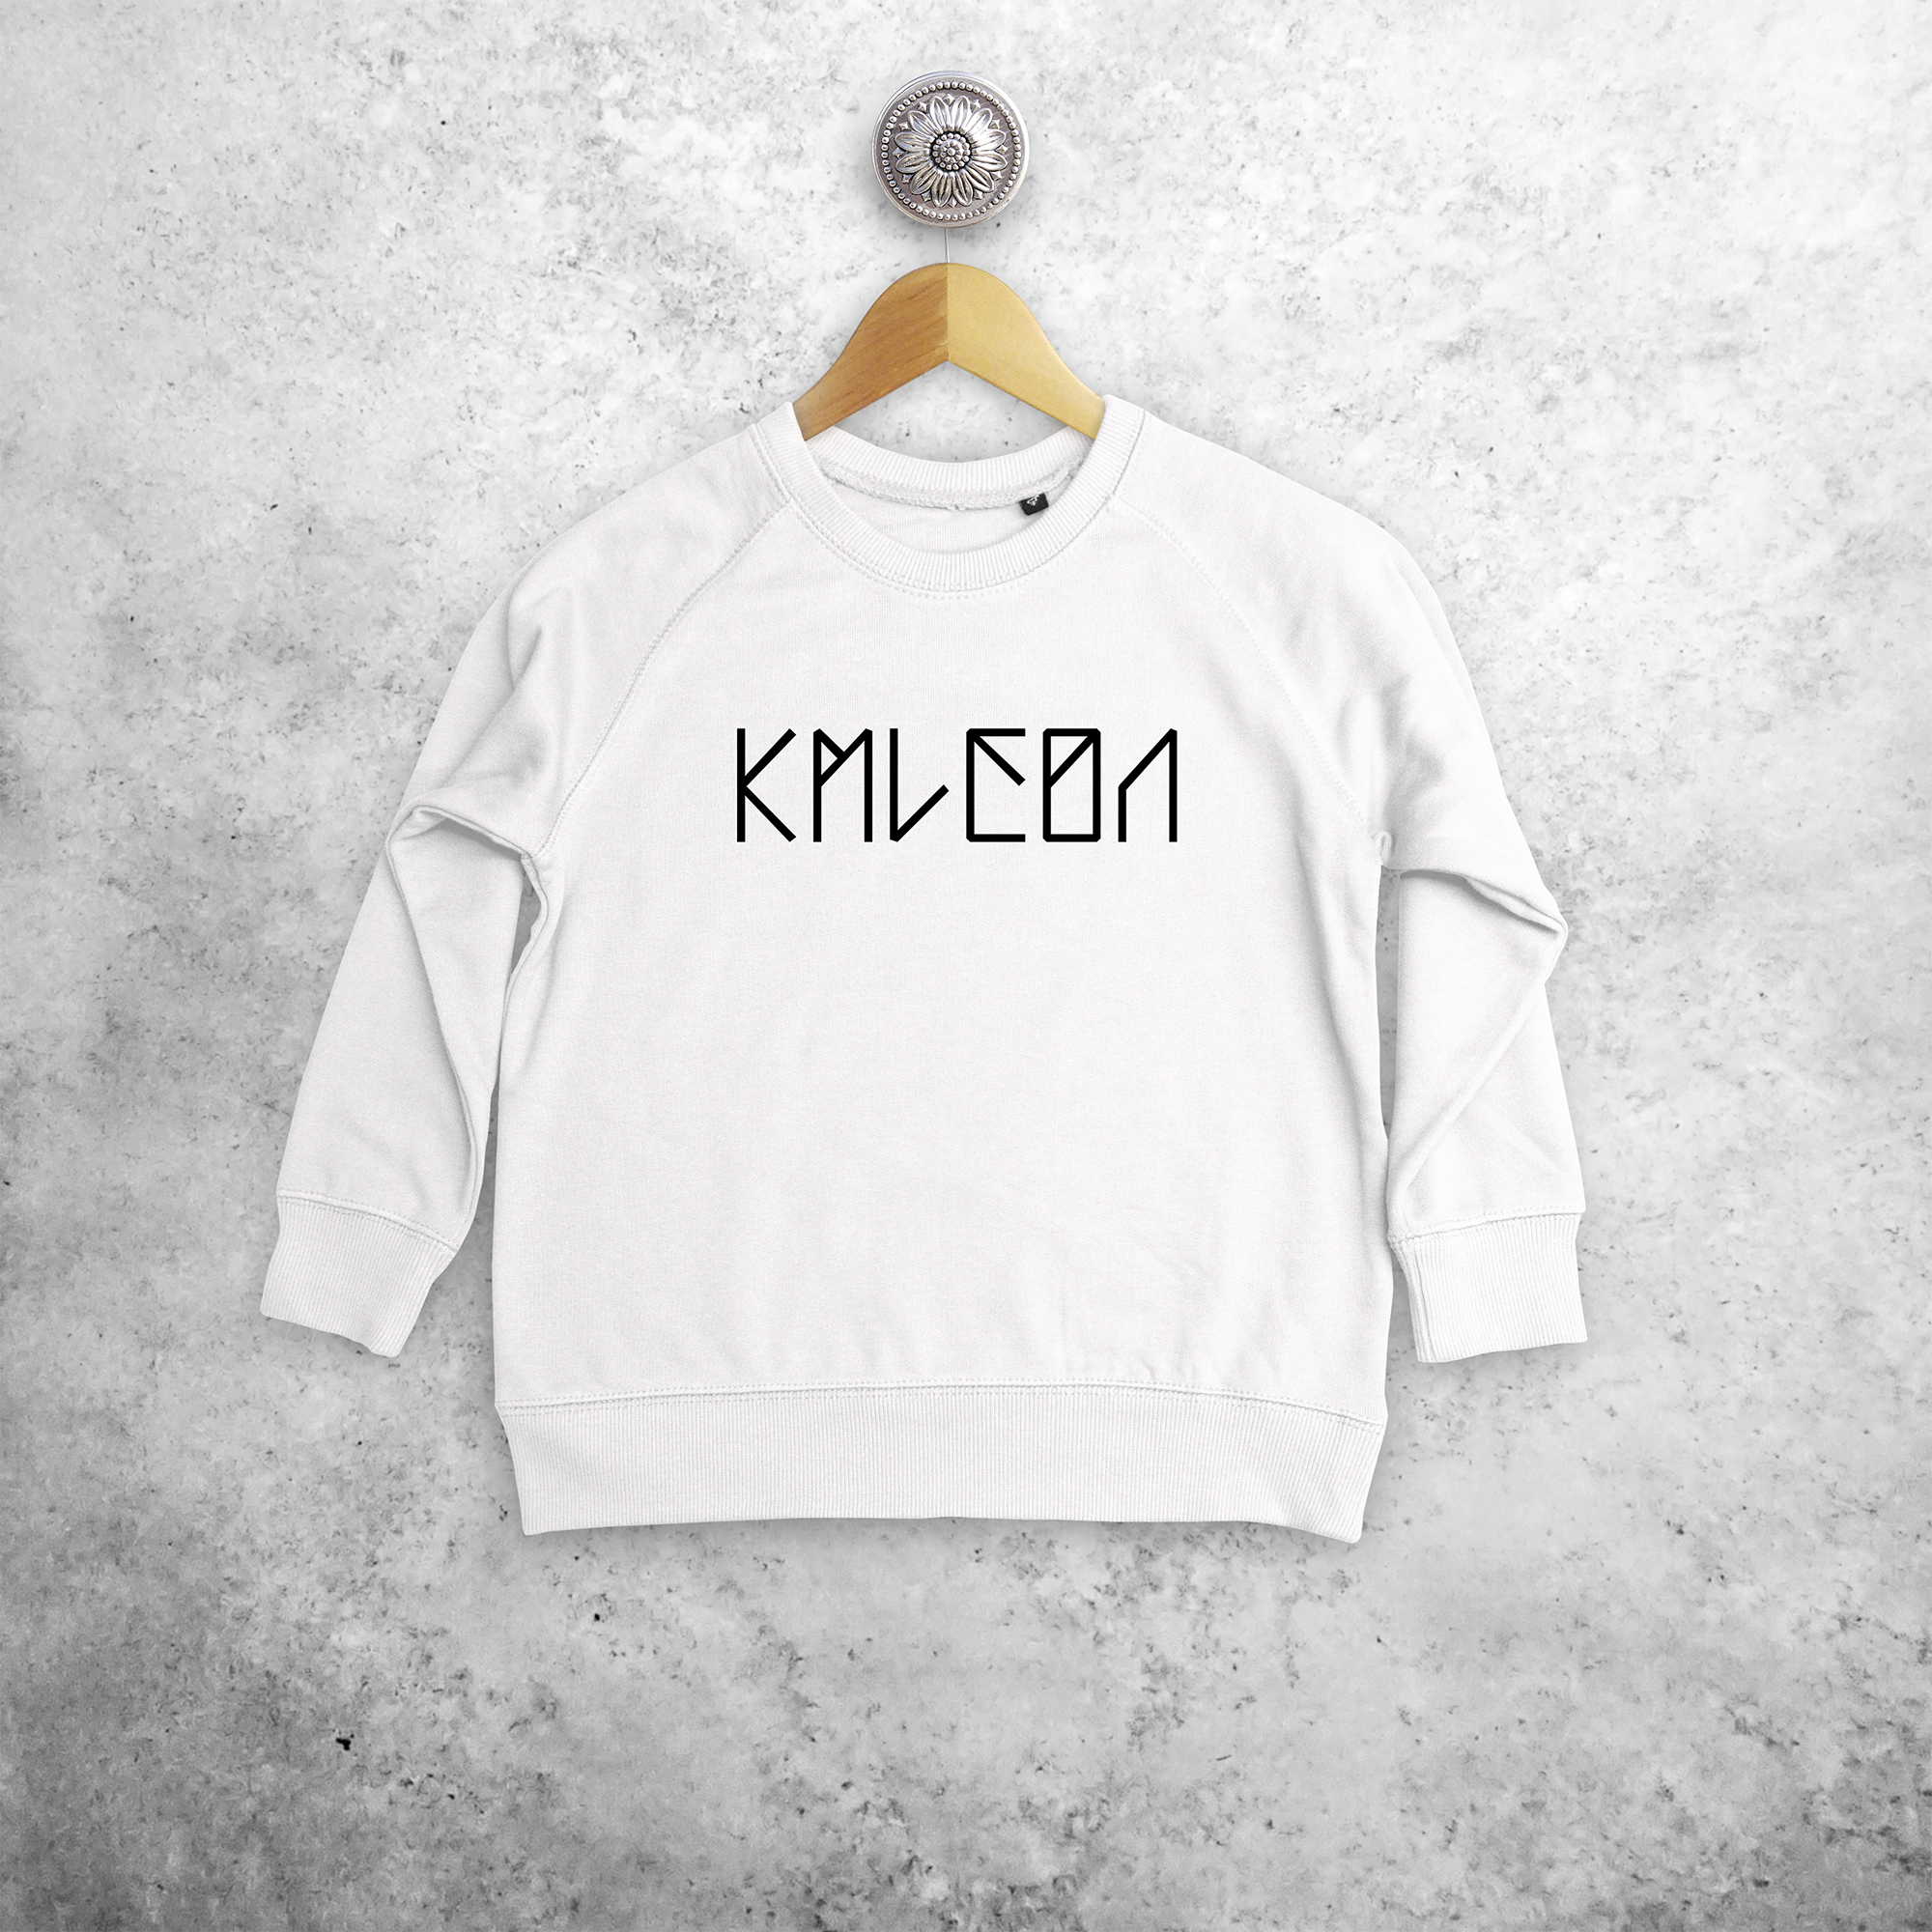 KMLeon kids sweater